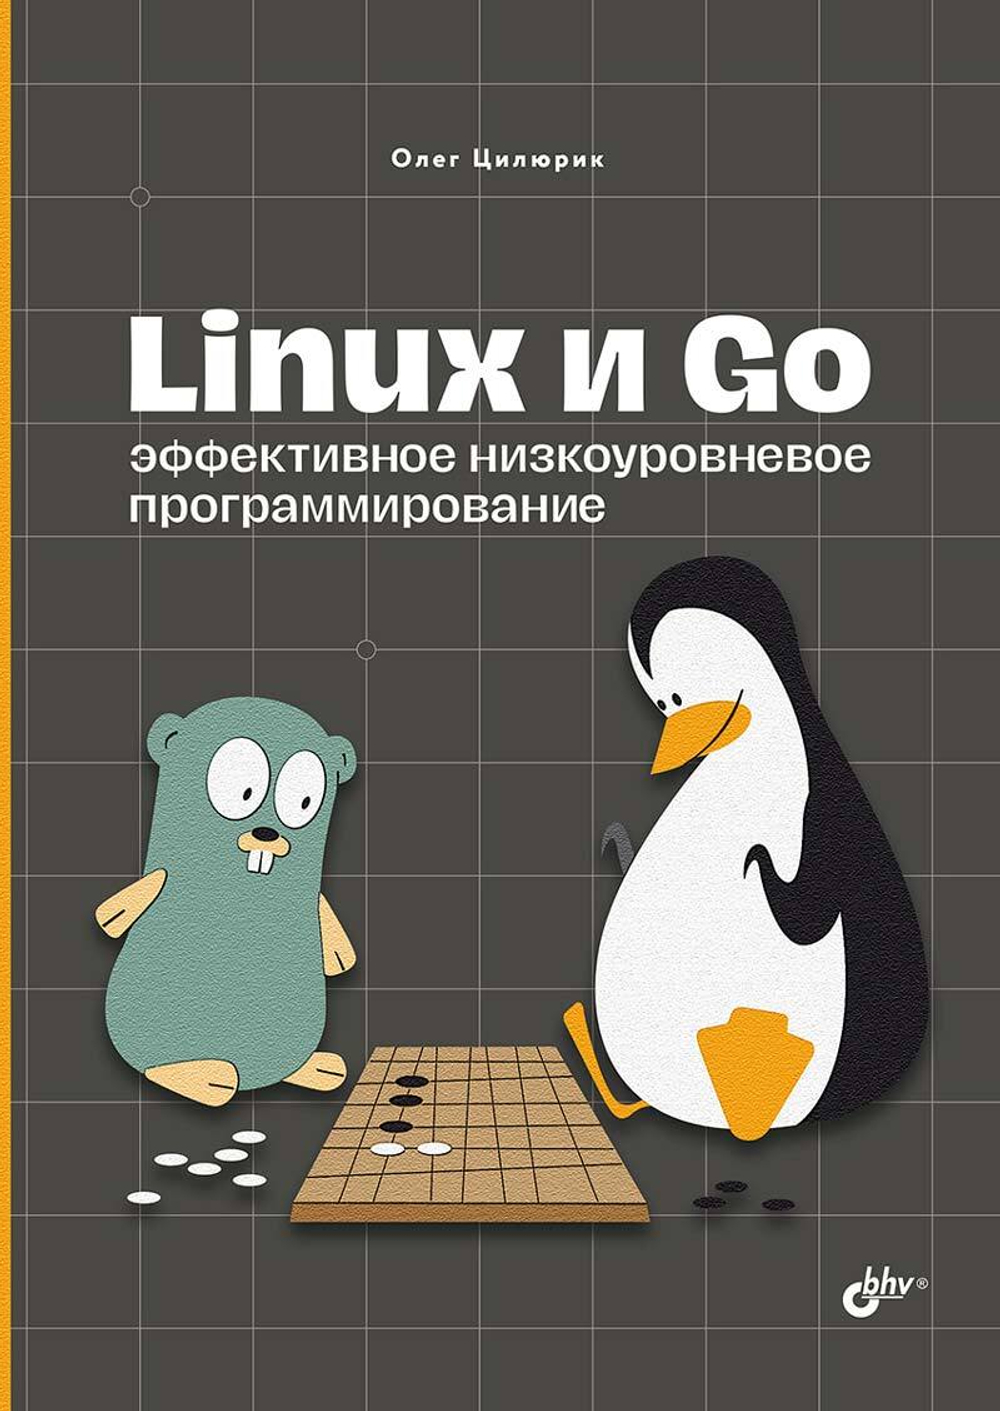 Книга: Цилюрик О. И. "Linux и Go. Эффективное низкоуровневое программирование"